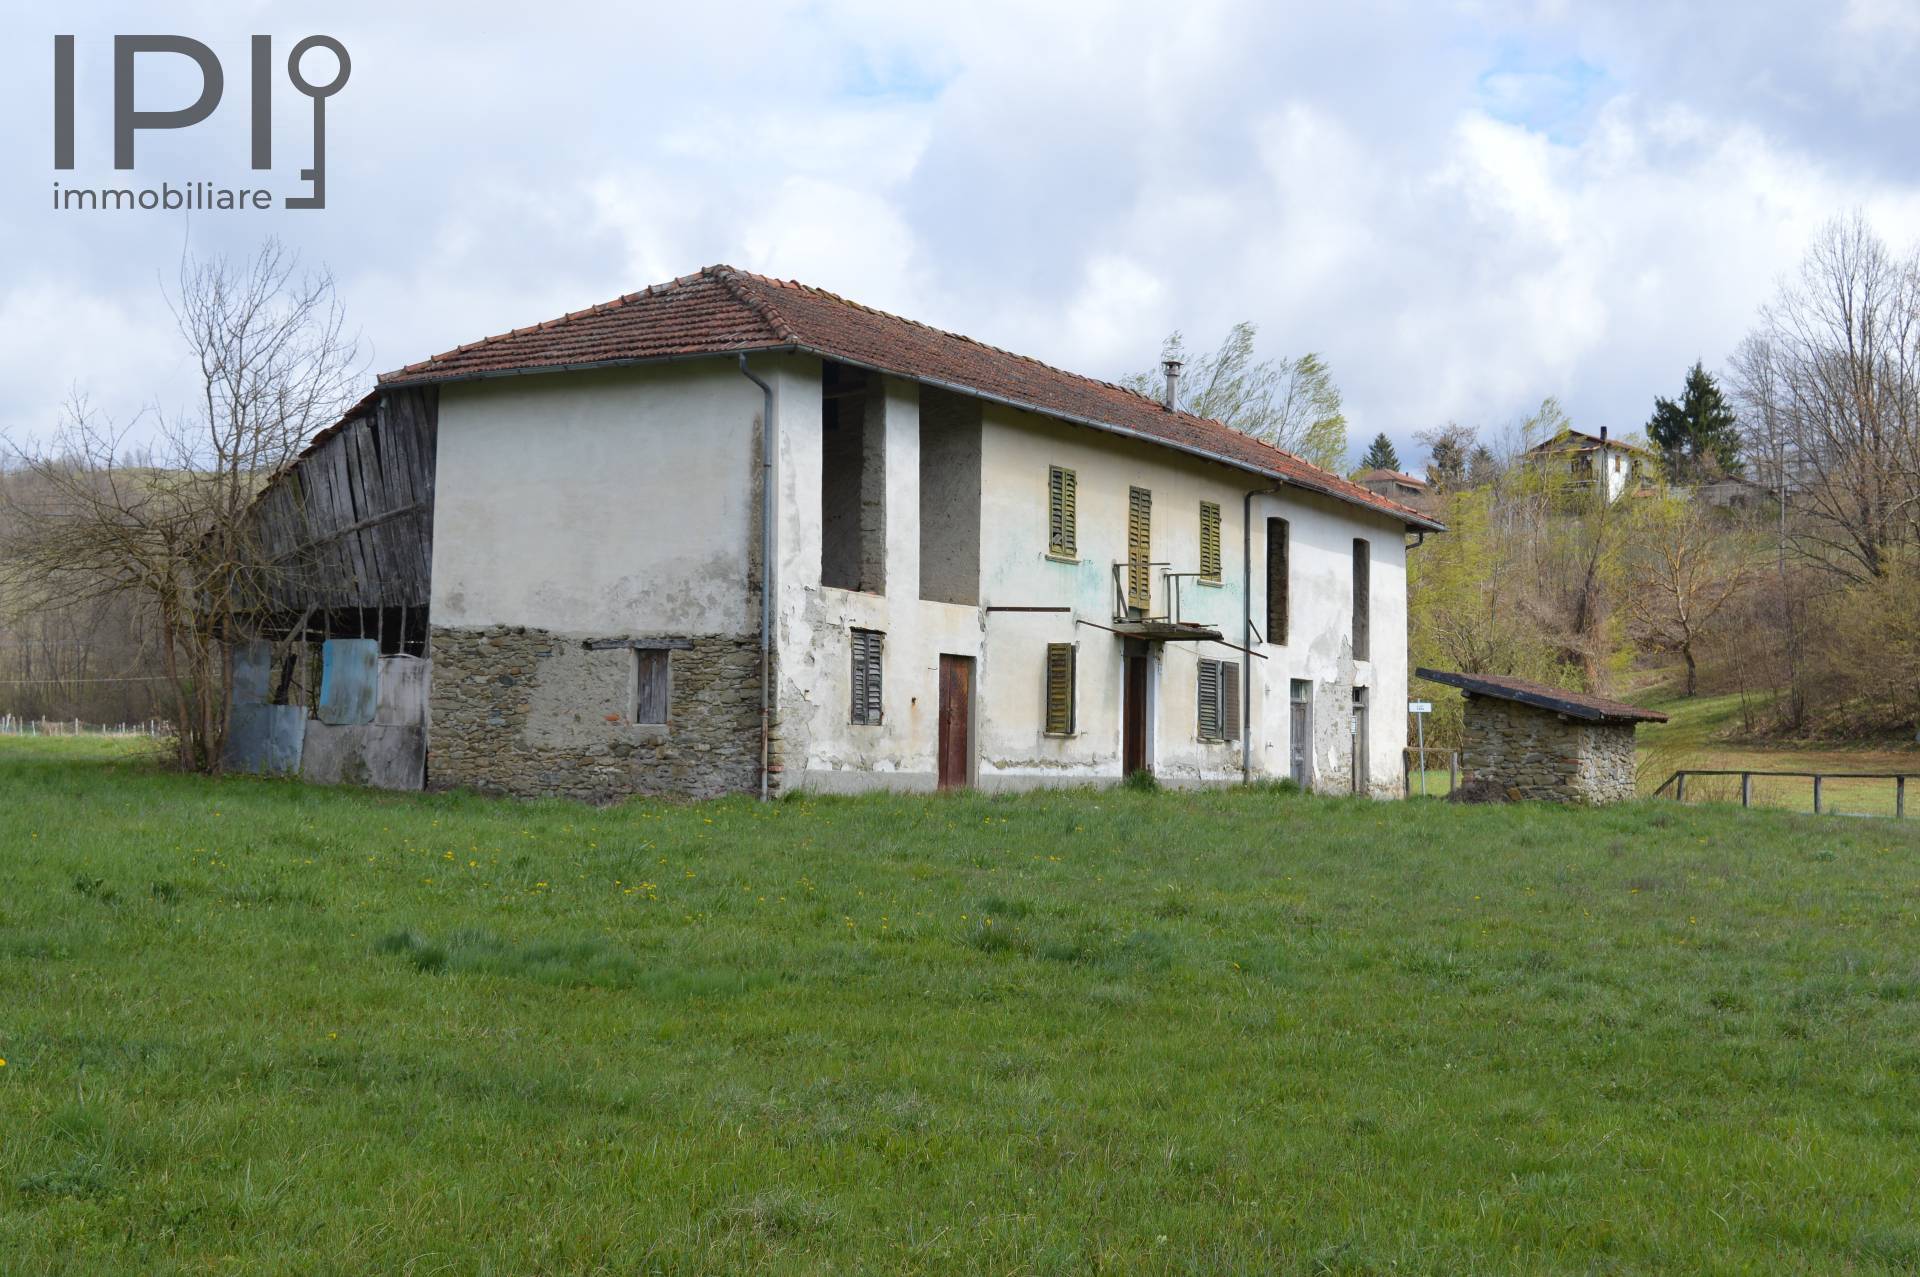 Rustico / Casale in vendita a Spigno Monferrato, 10 locali, prezzo € 110.000 | PortaleAgenzieImmobiliari.it